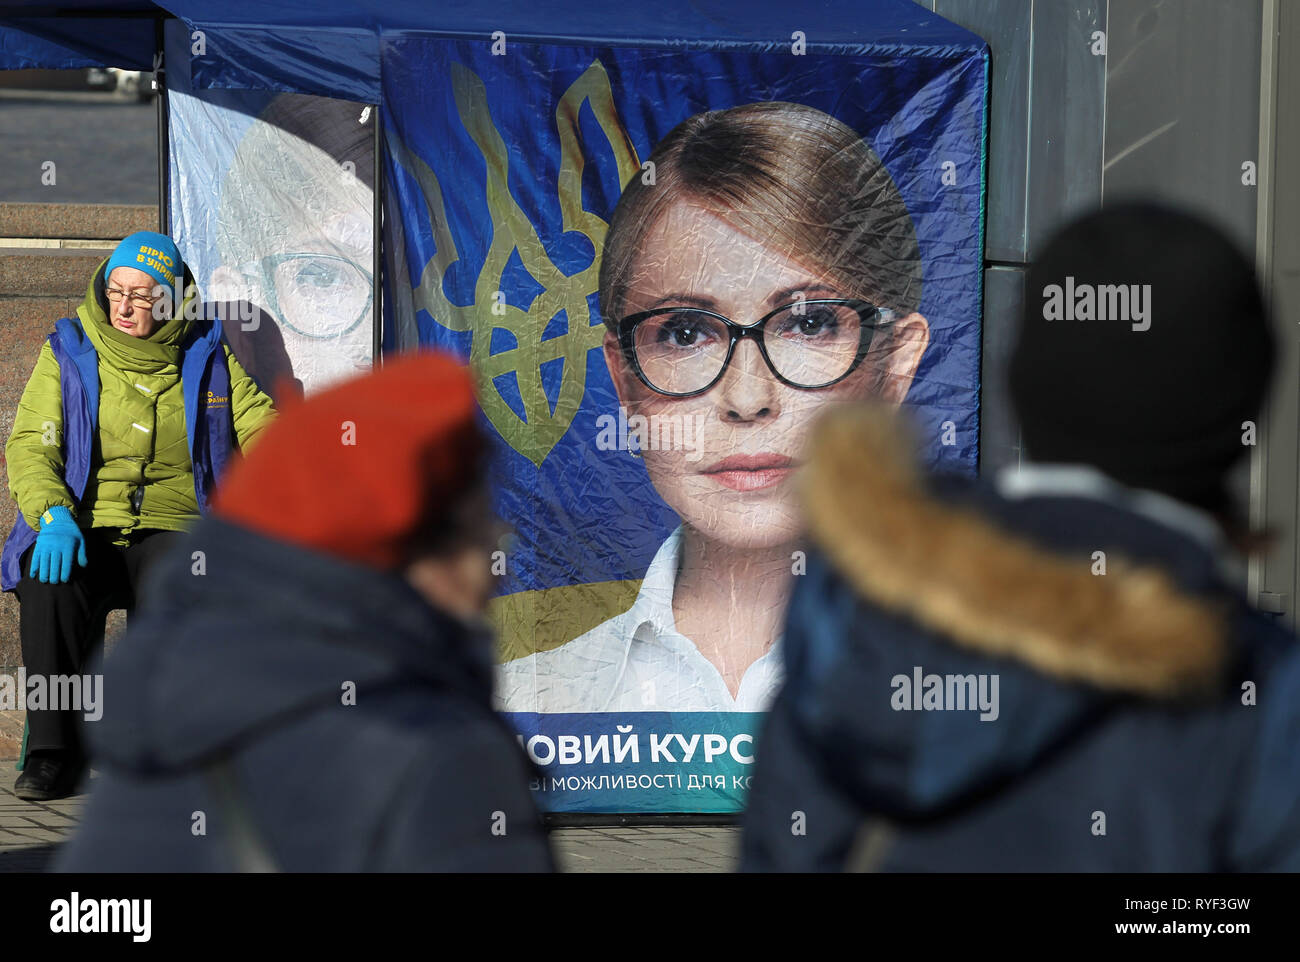 Les Ukrainiens sont vus en passant devant une tente de campagne de candidat à la présidence ukrainienne Ioulia Timochenko au centre-ville de Kiev, Ukraine. Les prochaines élections présidentielles en Ukraine aura lieu le 31 mars 2019. Banque D'Images